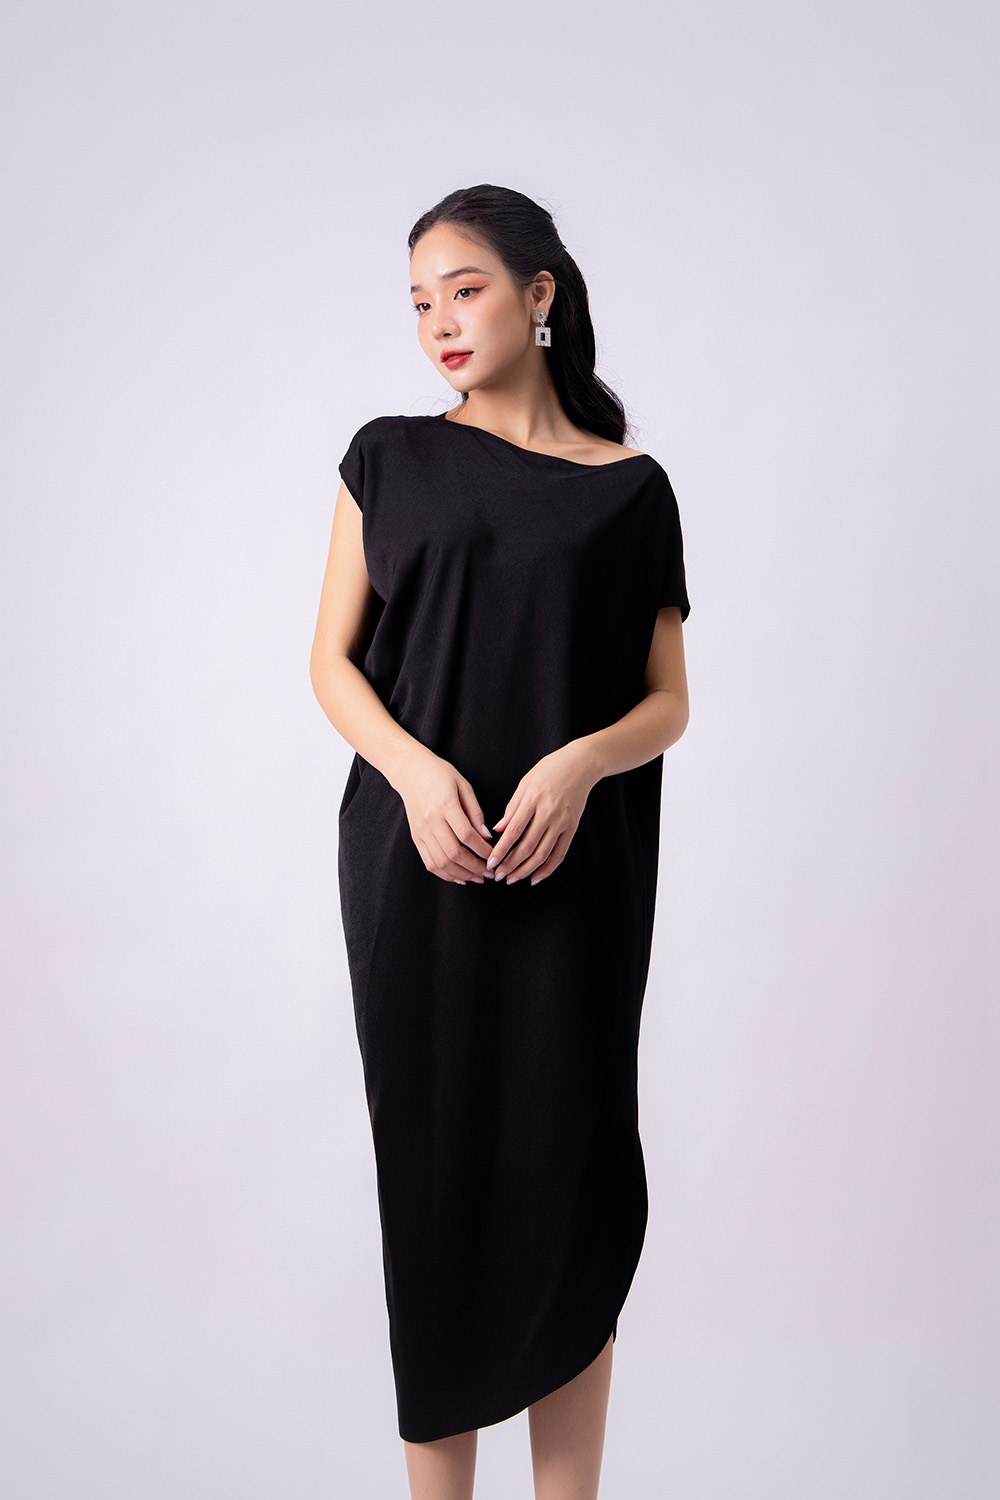 Váy lụa satin hai dây cổ đổ siêu sexy 4 màu đen, xanh rêu, nude, vàng đỏ |  Shopee Việt Nam